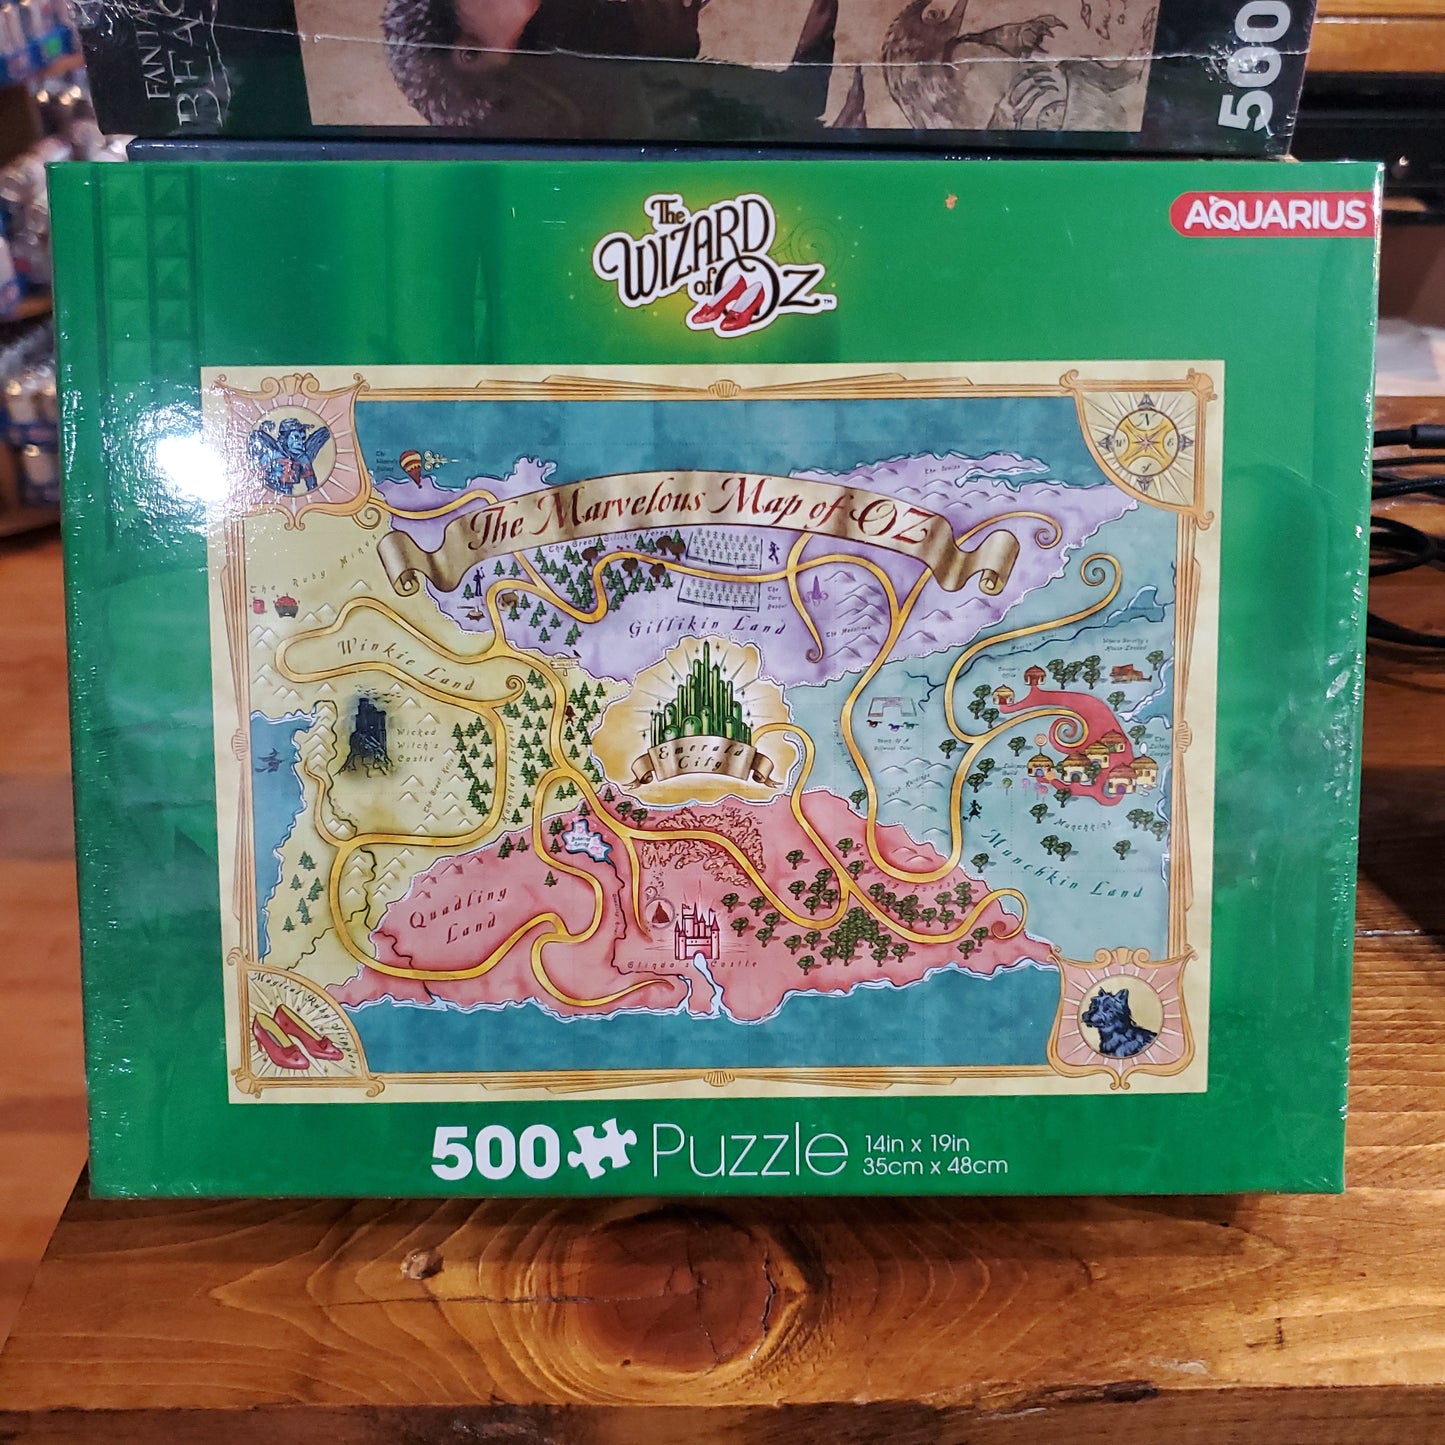 Aquarius Puzzles - Wizard of Oz - 500 pieces GAMES